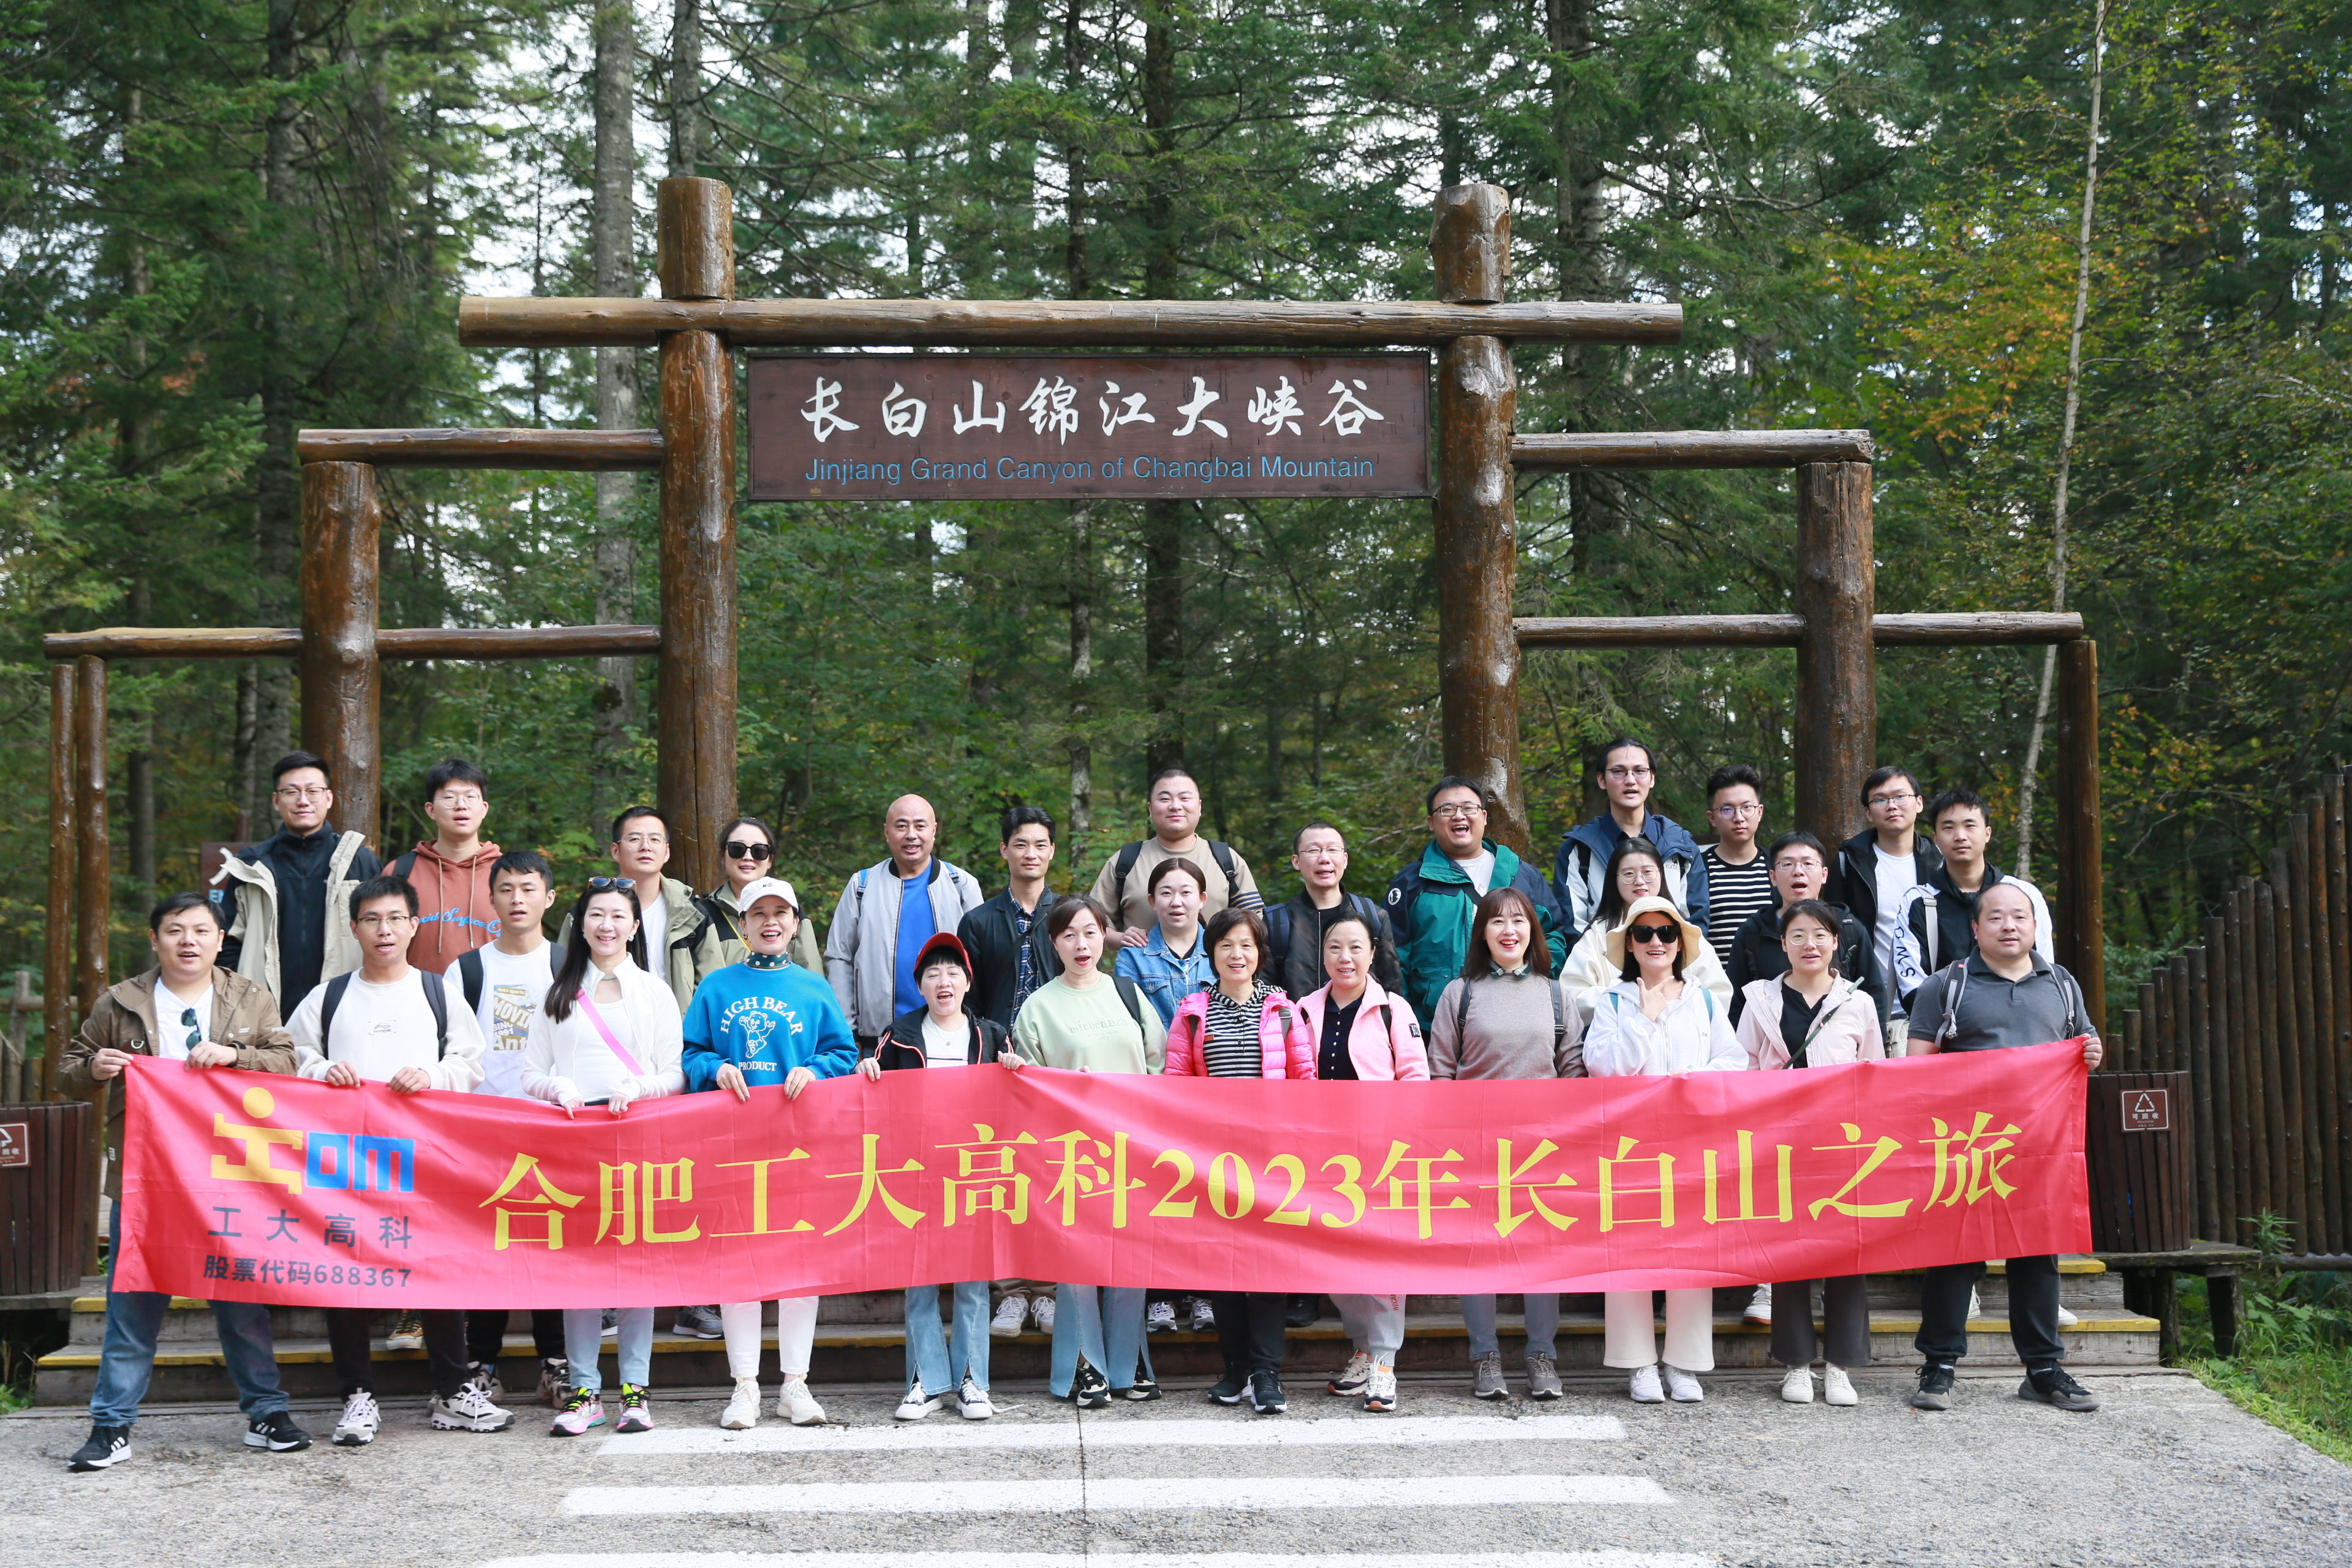 2023 trip to Changbai Mountain for high-tech staff